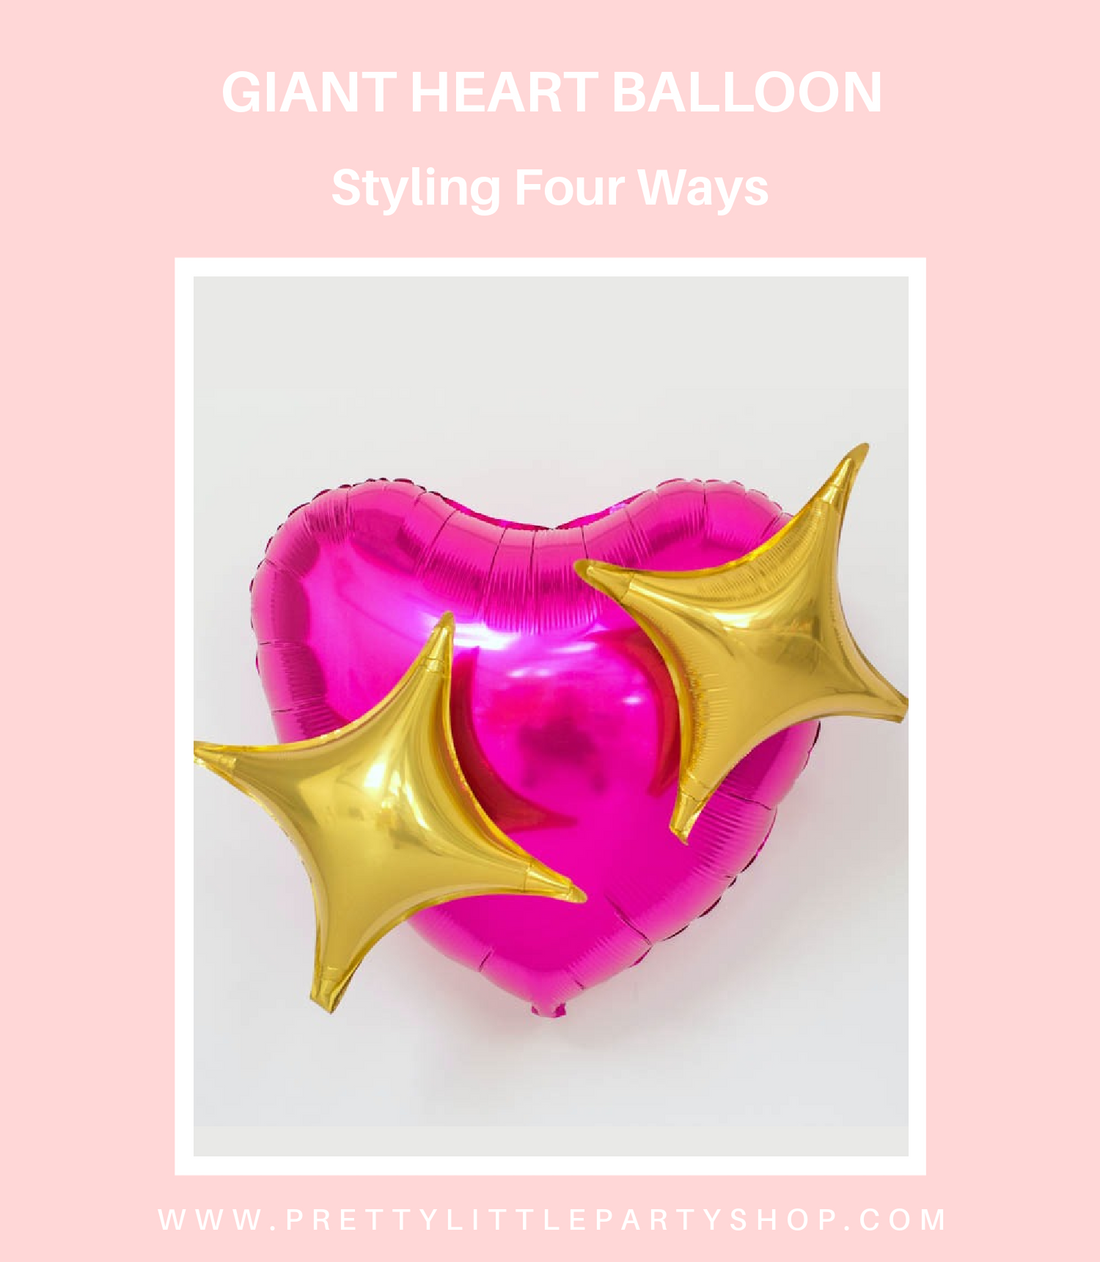 Giant Heart Balloon Tutorial - Four ways to style a giant foil balloon